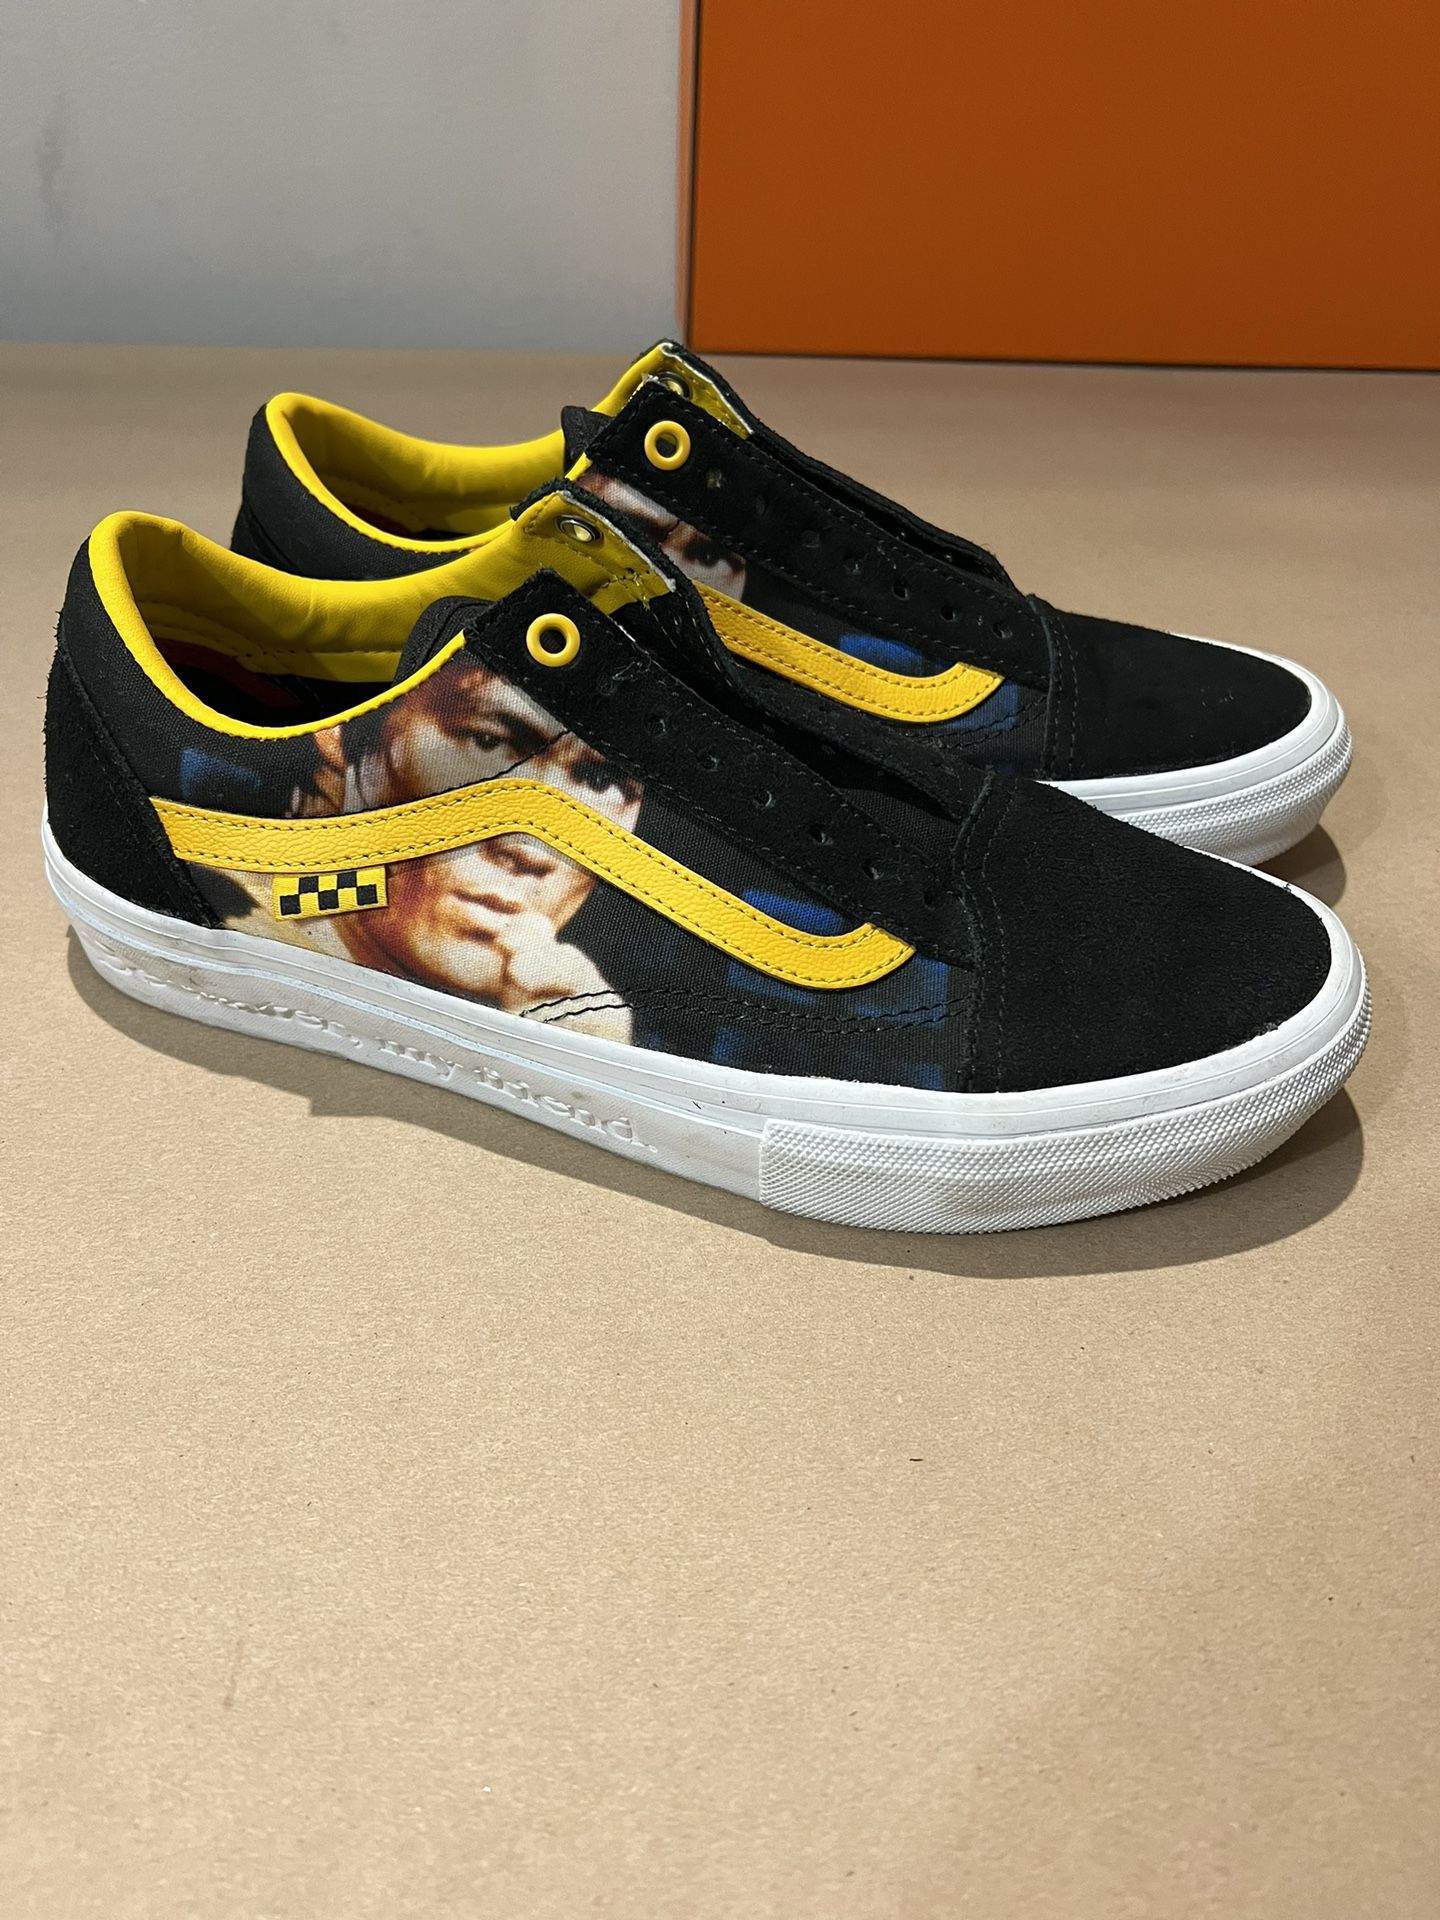 NEW Vans x Bruce Lee Skate Old Skool Black Yellow Casual Shoe Sneaker Mens 